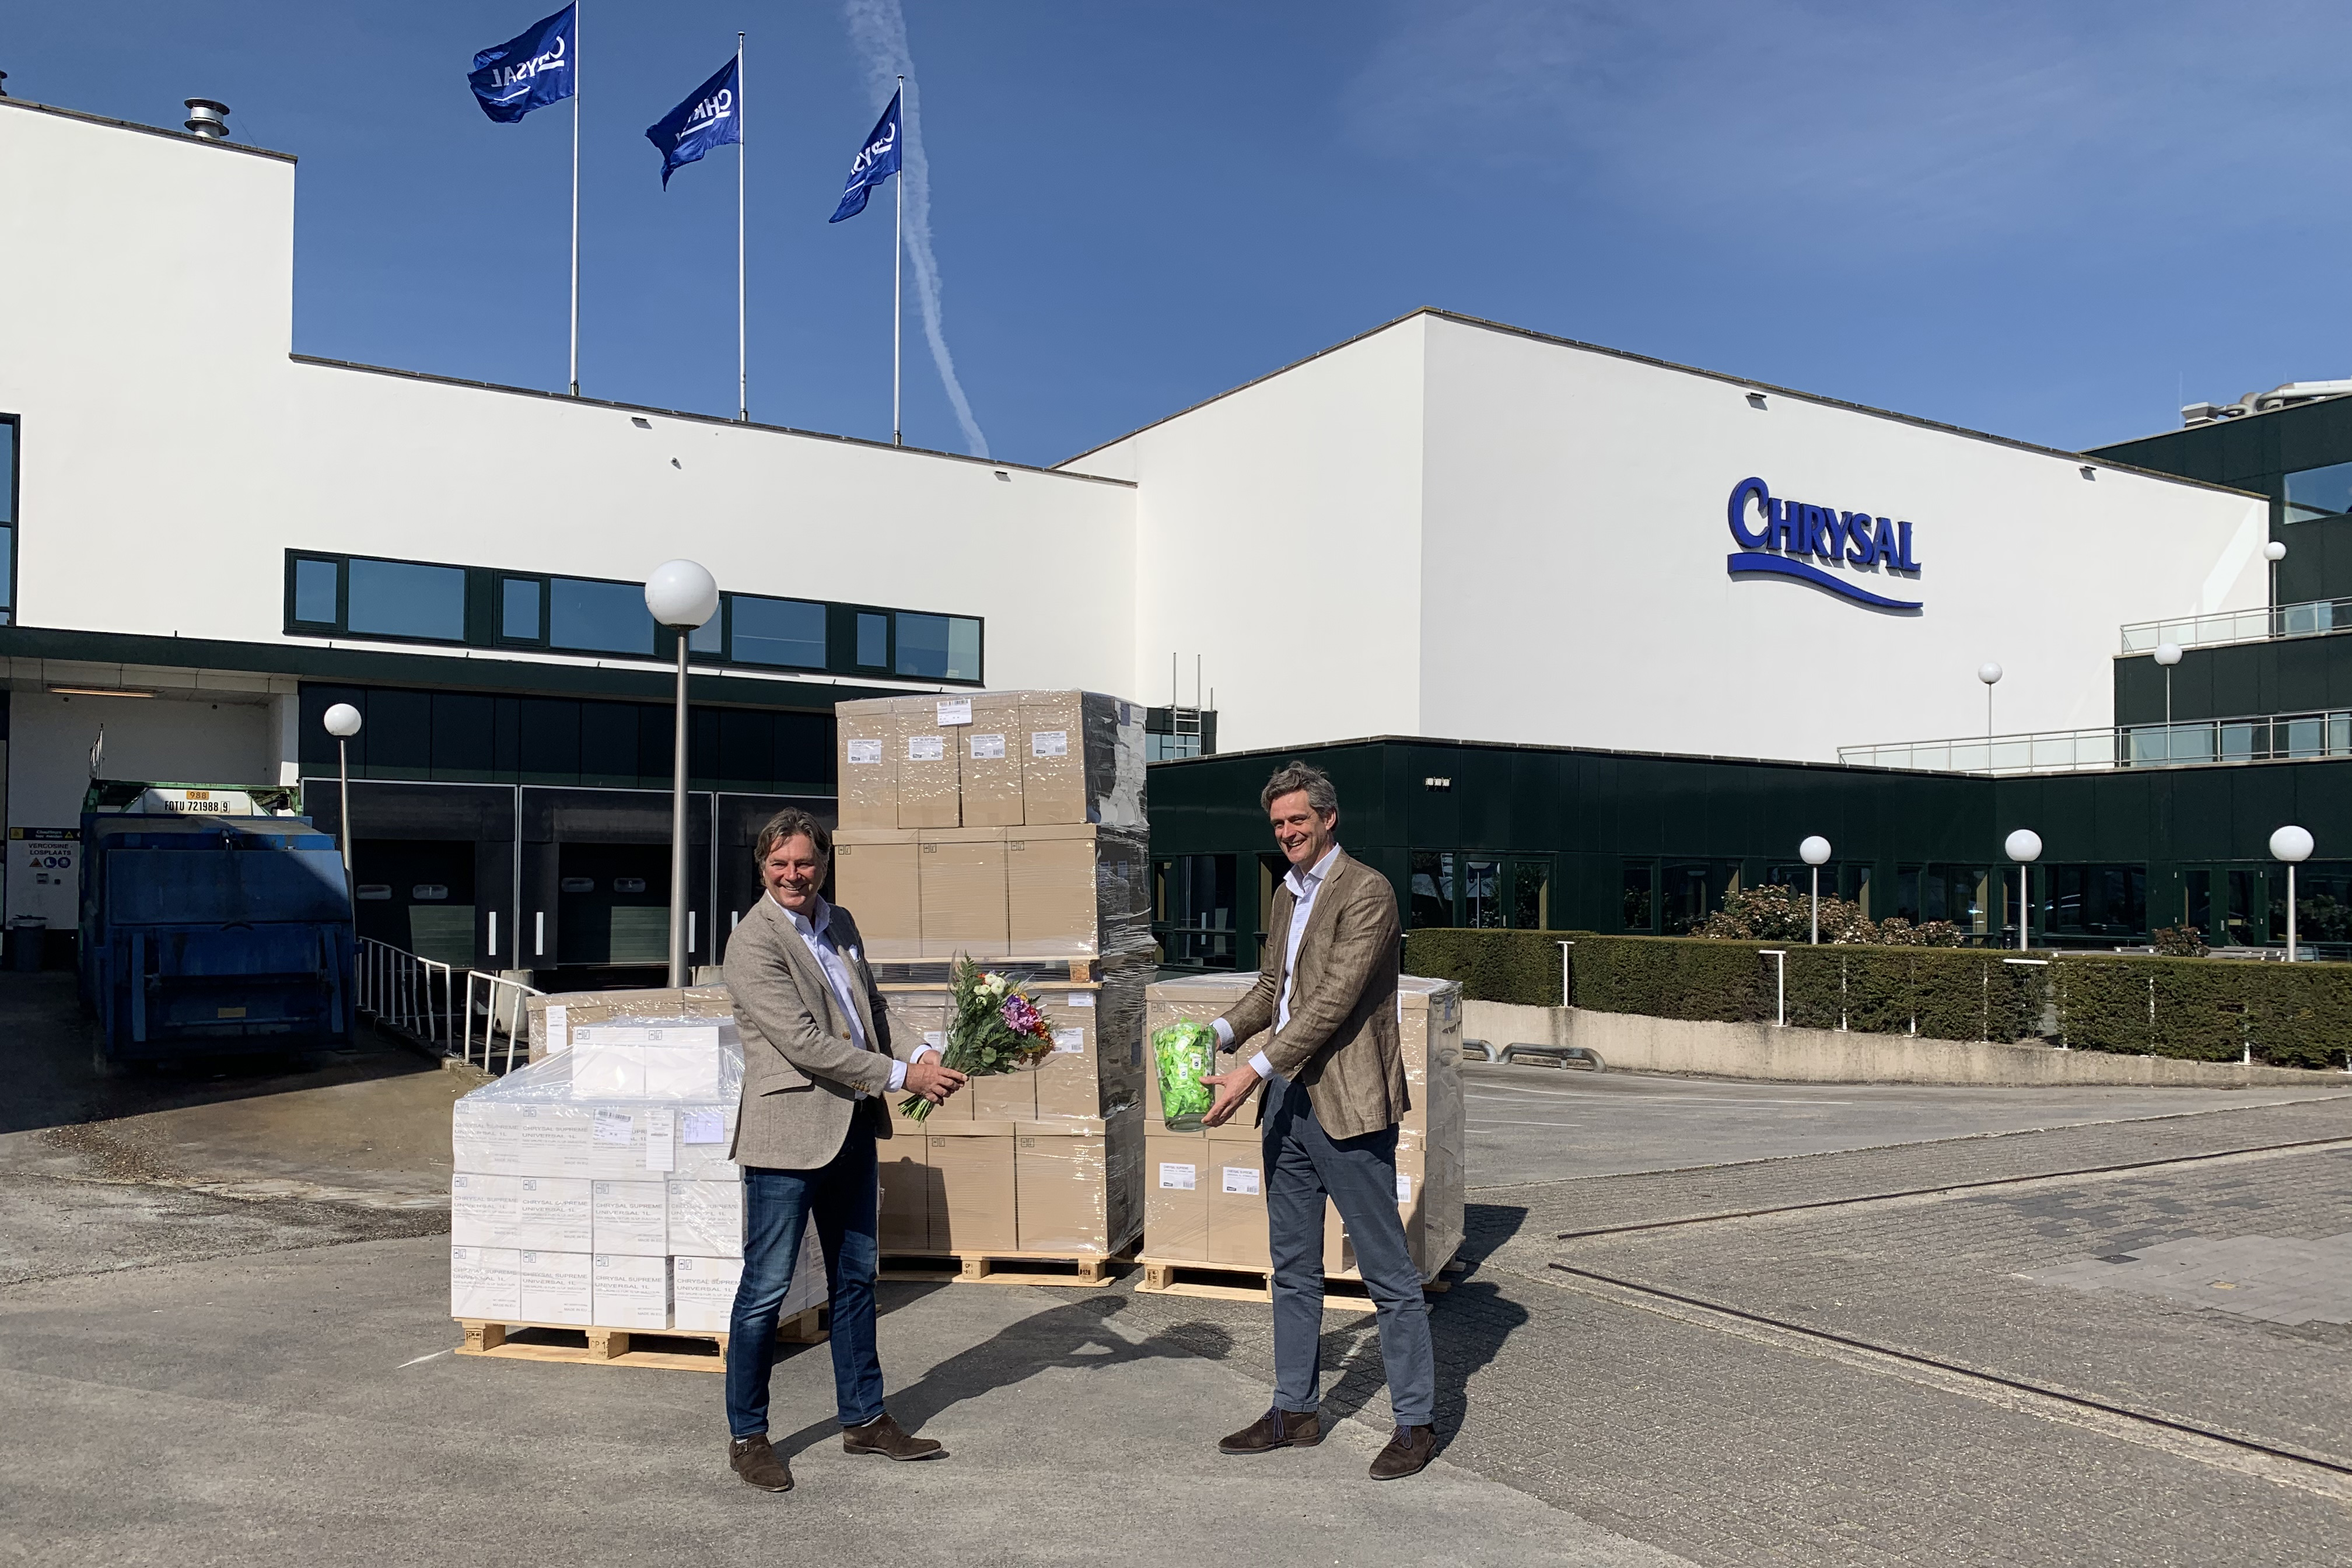 Marcel Zandvliet van DFG ontvangt de bloemenvoeding uit handen van Sales Director Hugo Kolff van Chrysal